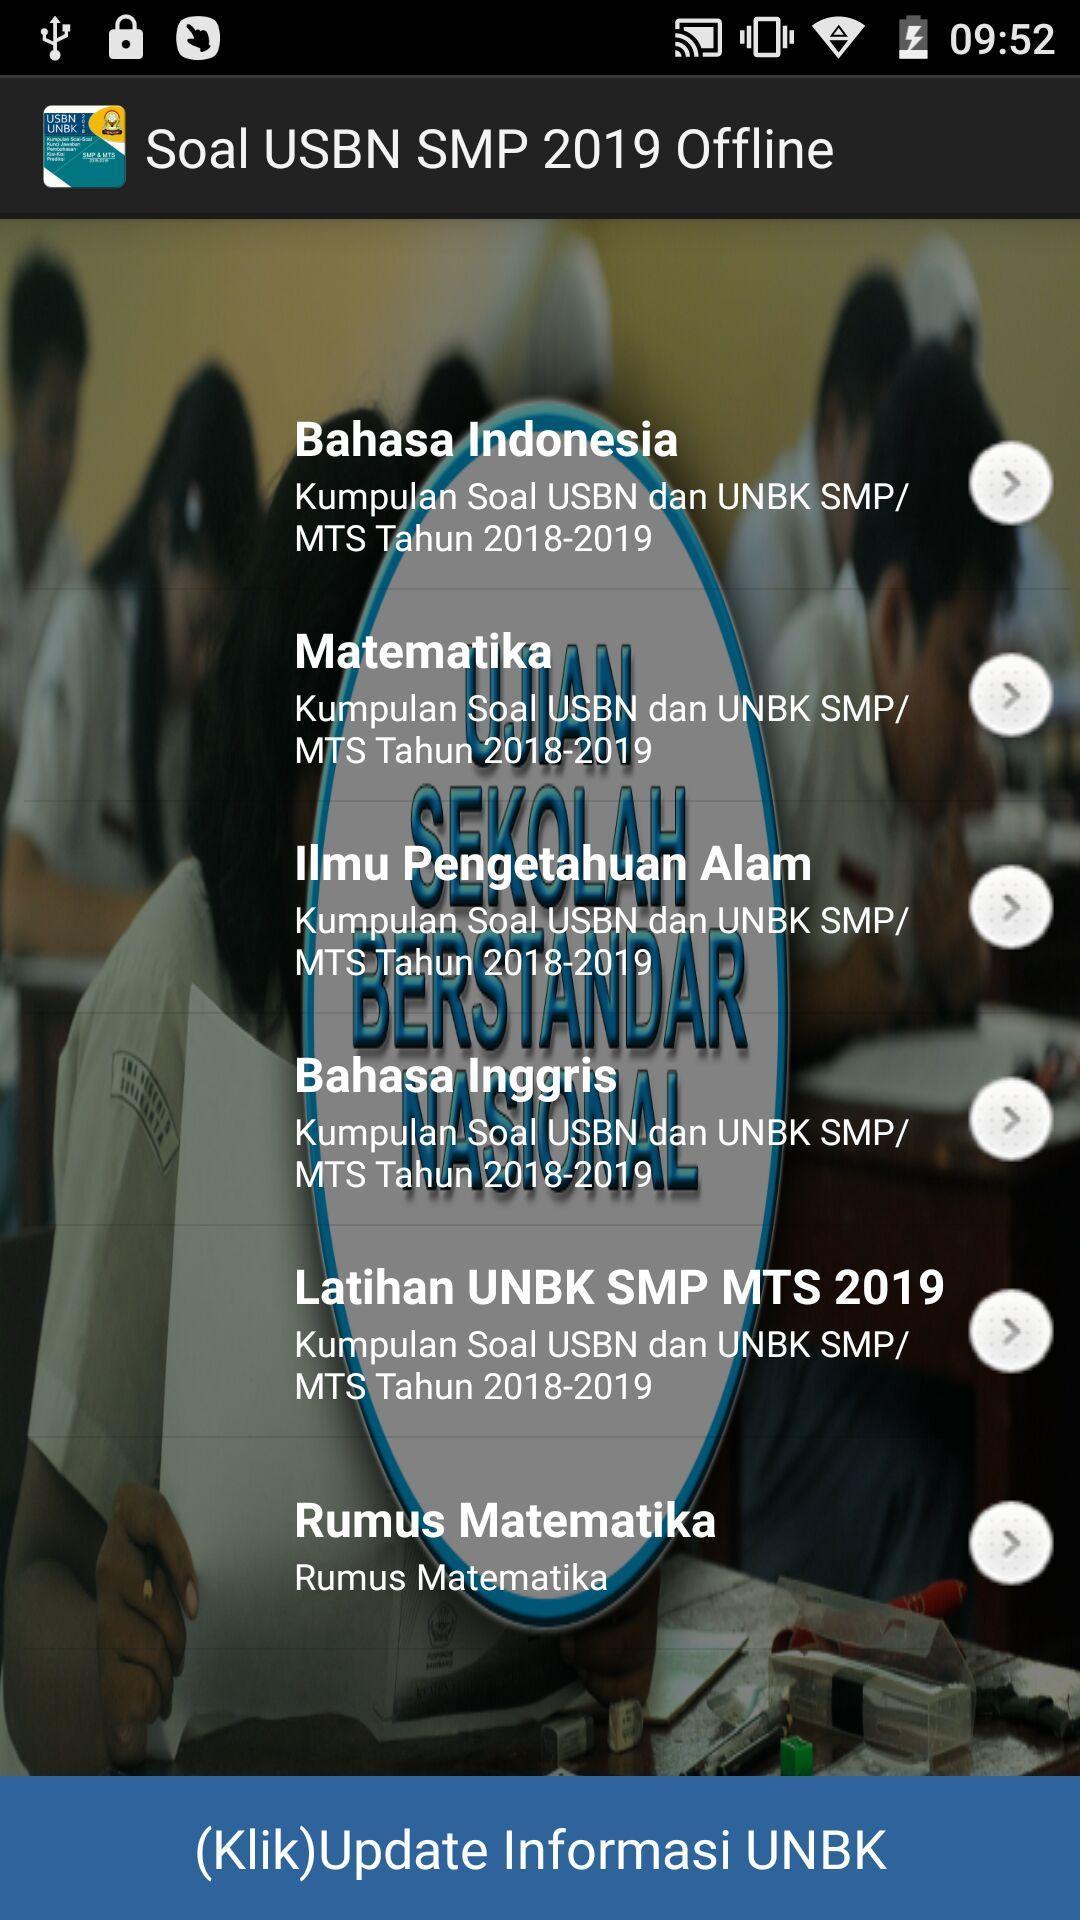 Soal Usbn Smp 2019 Offline For Android Apk Download